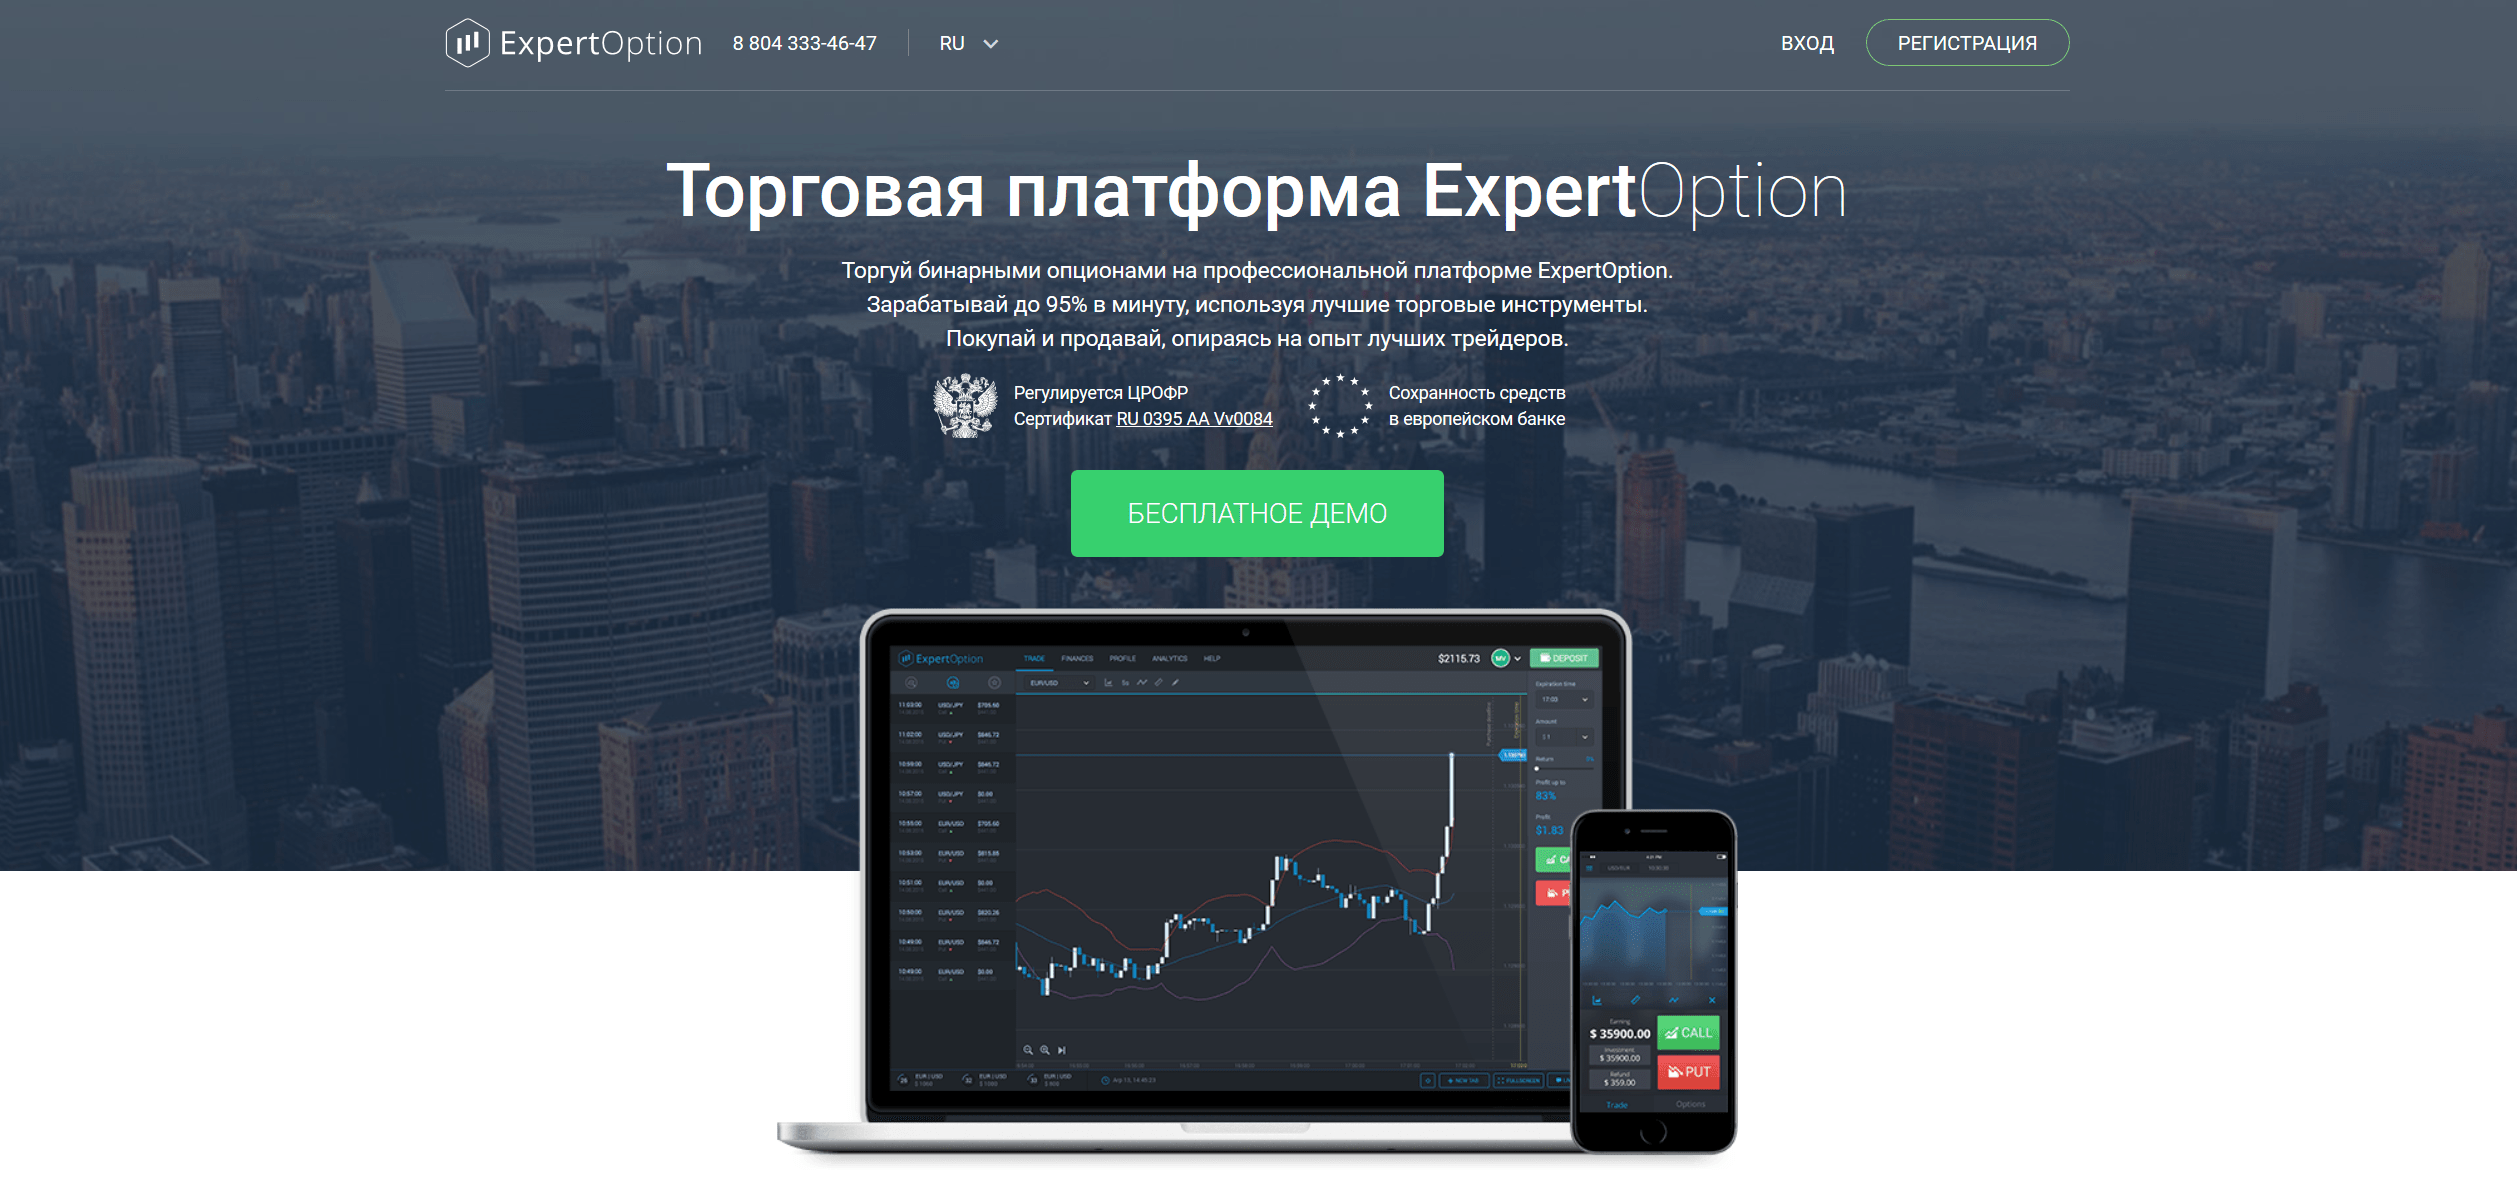 Торговая платформа ExpertOption